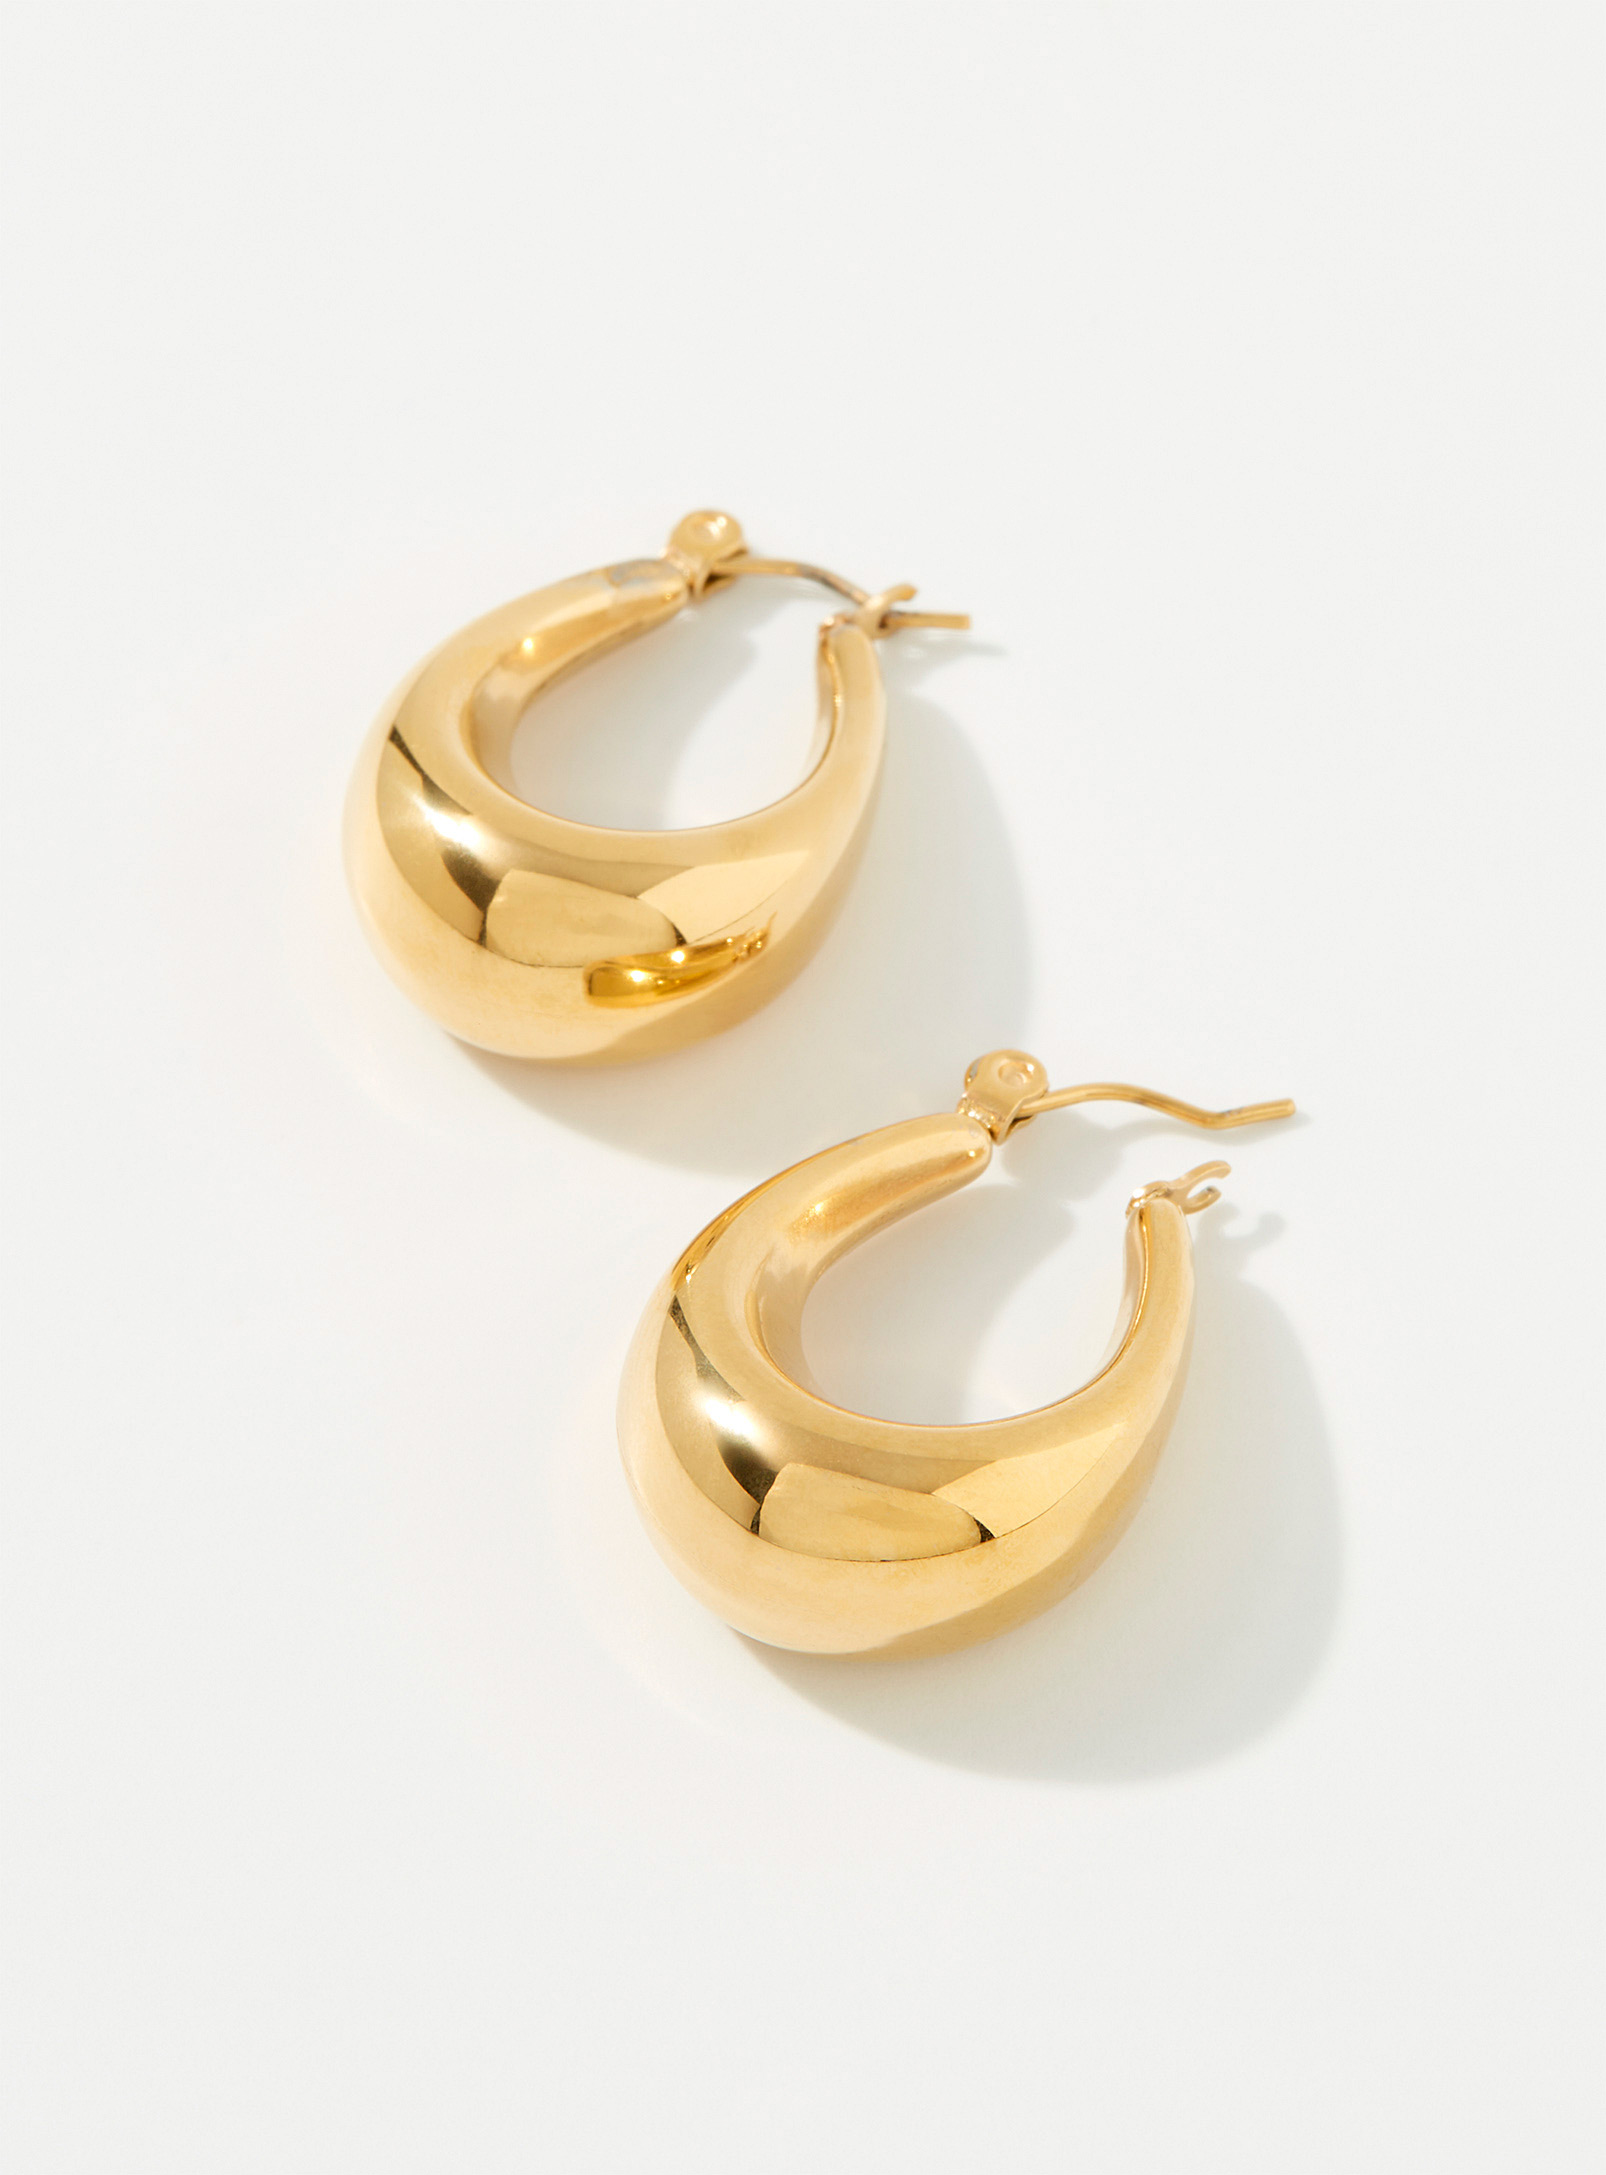 Simons - Women's Oval domed earrings